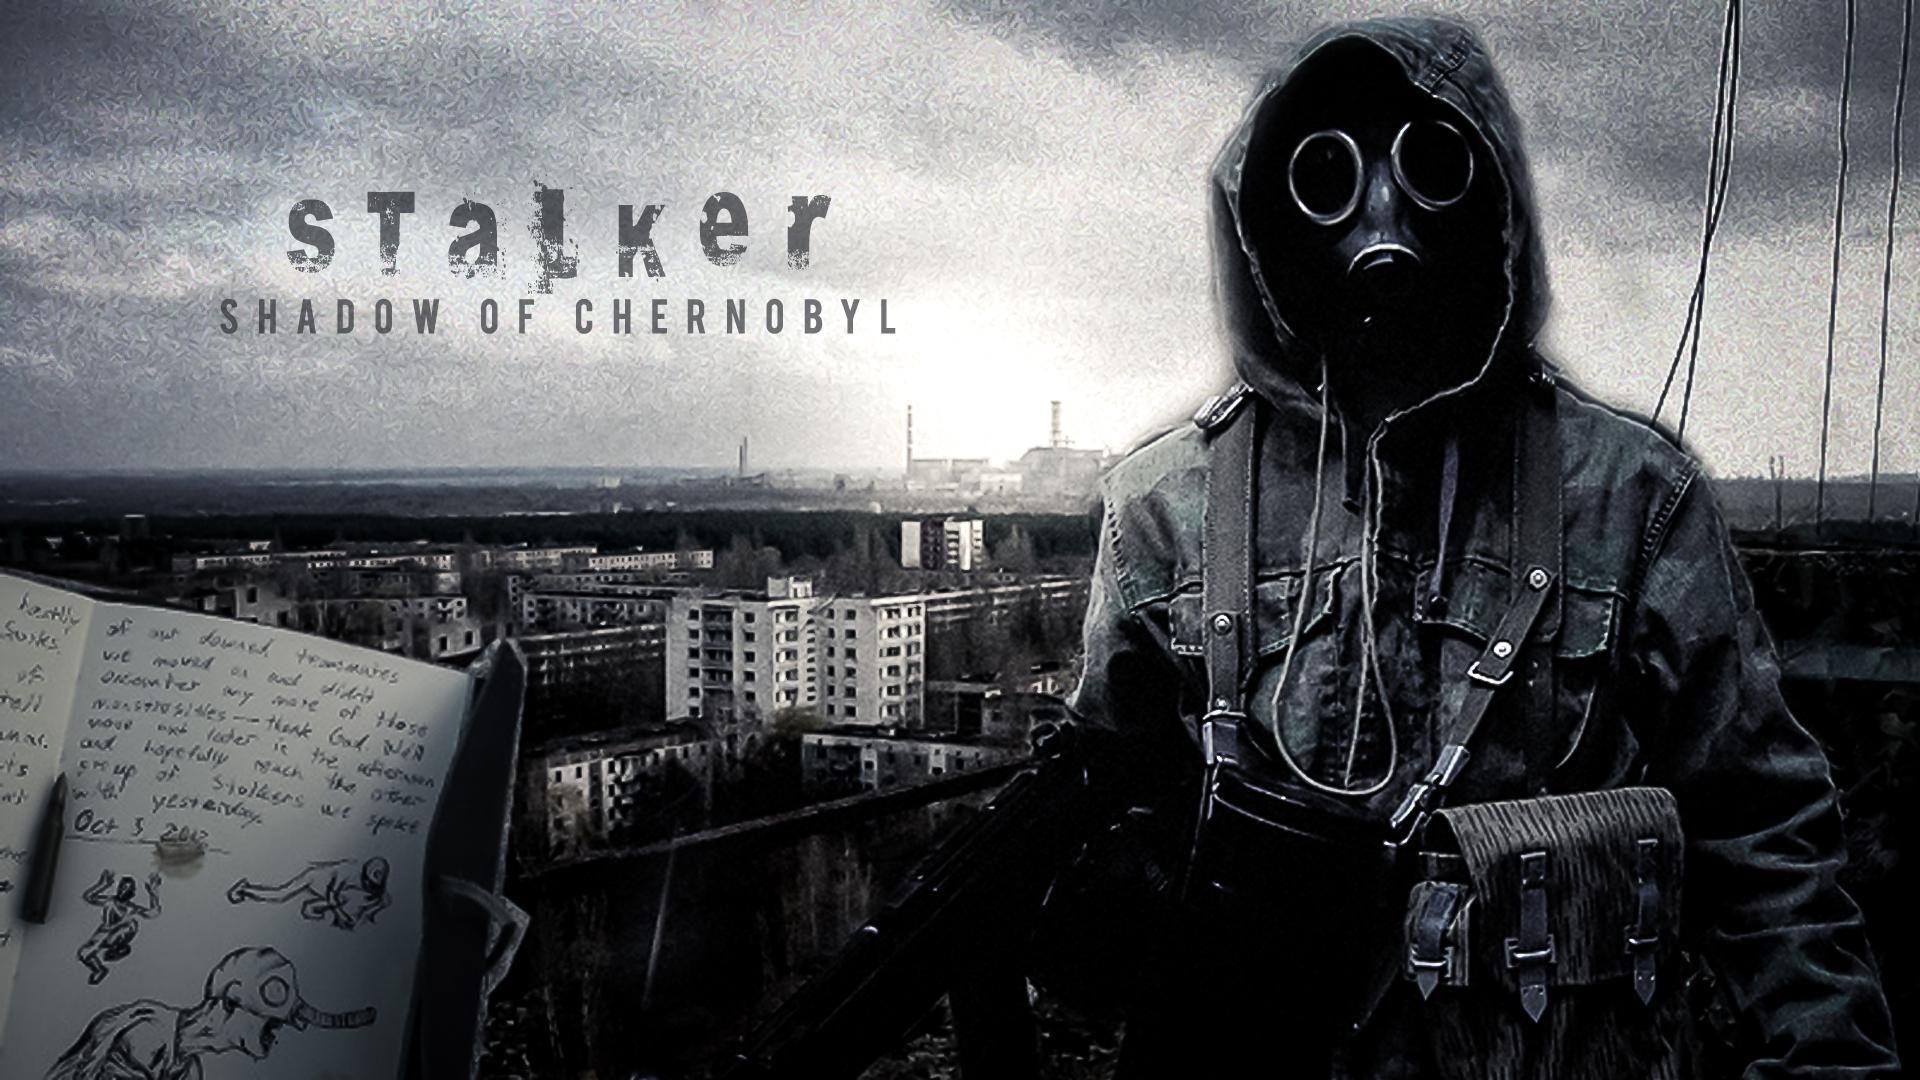 Stalker (2013 version)